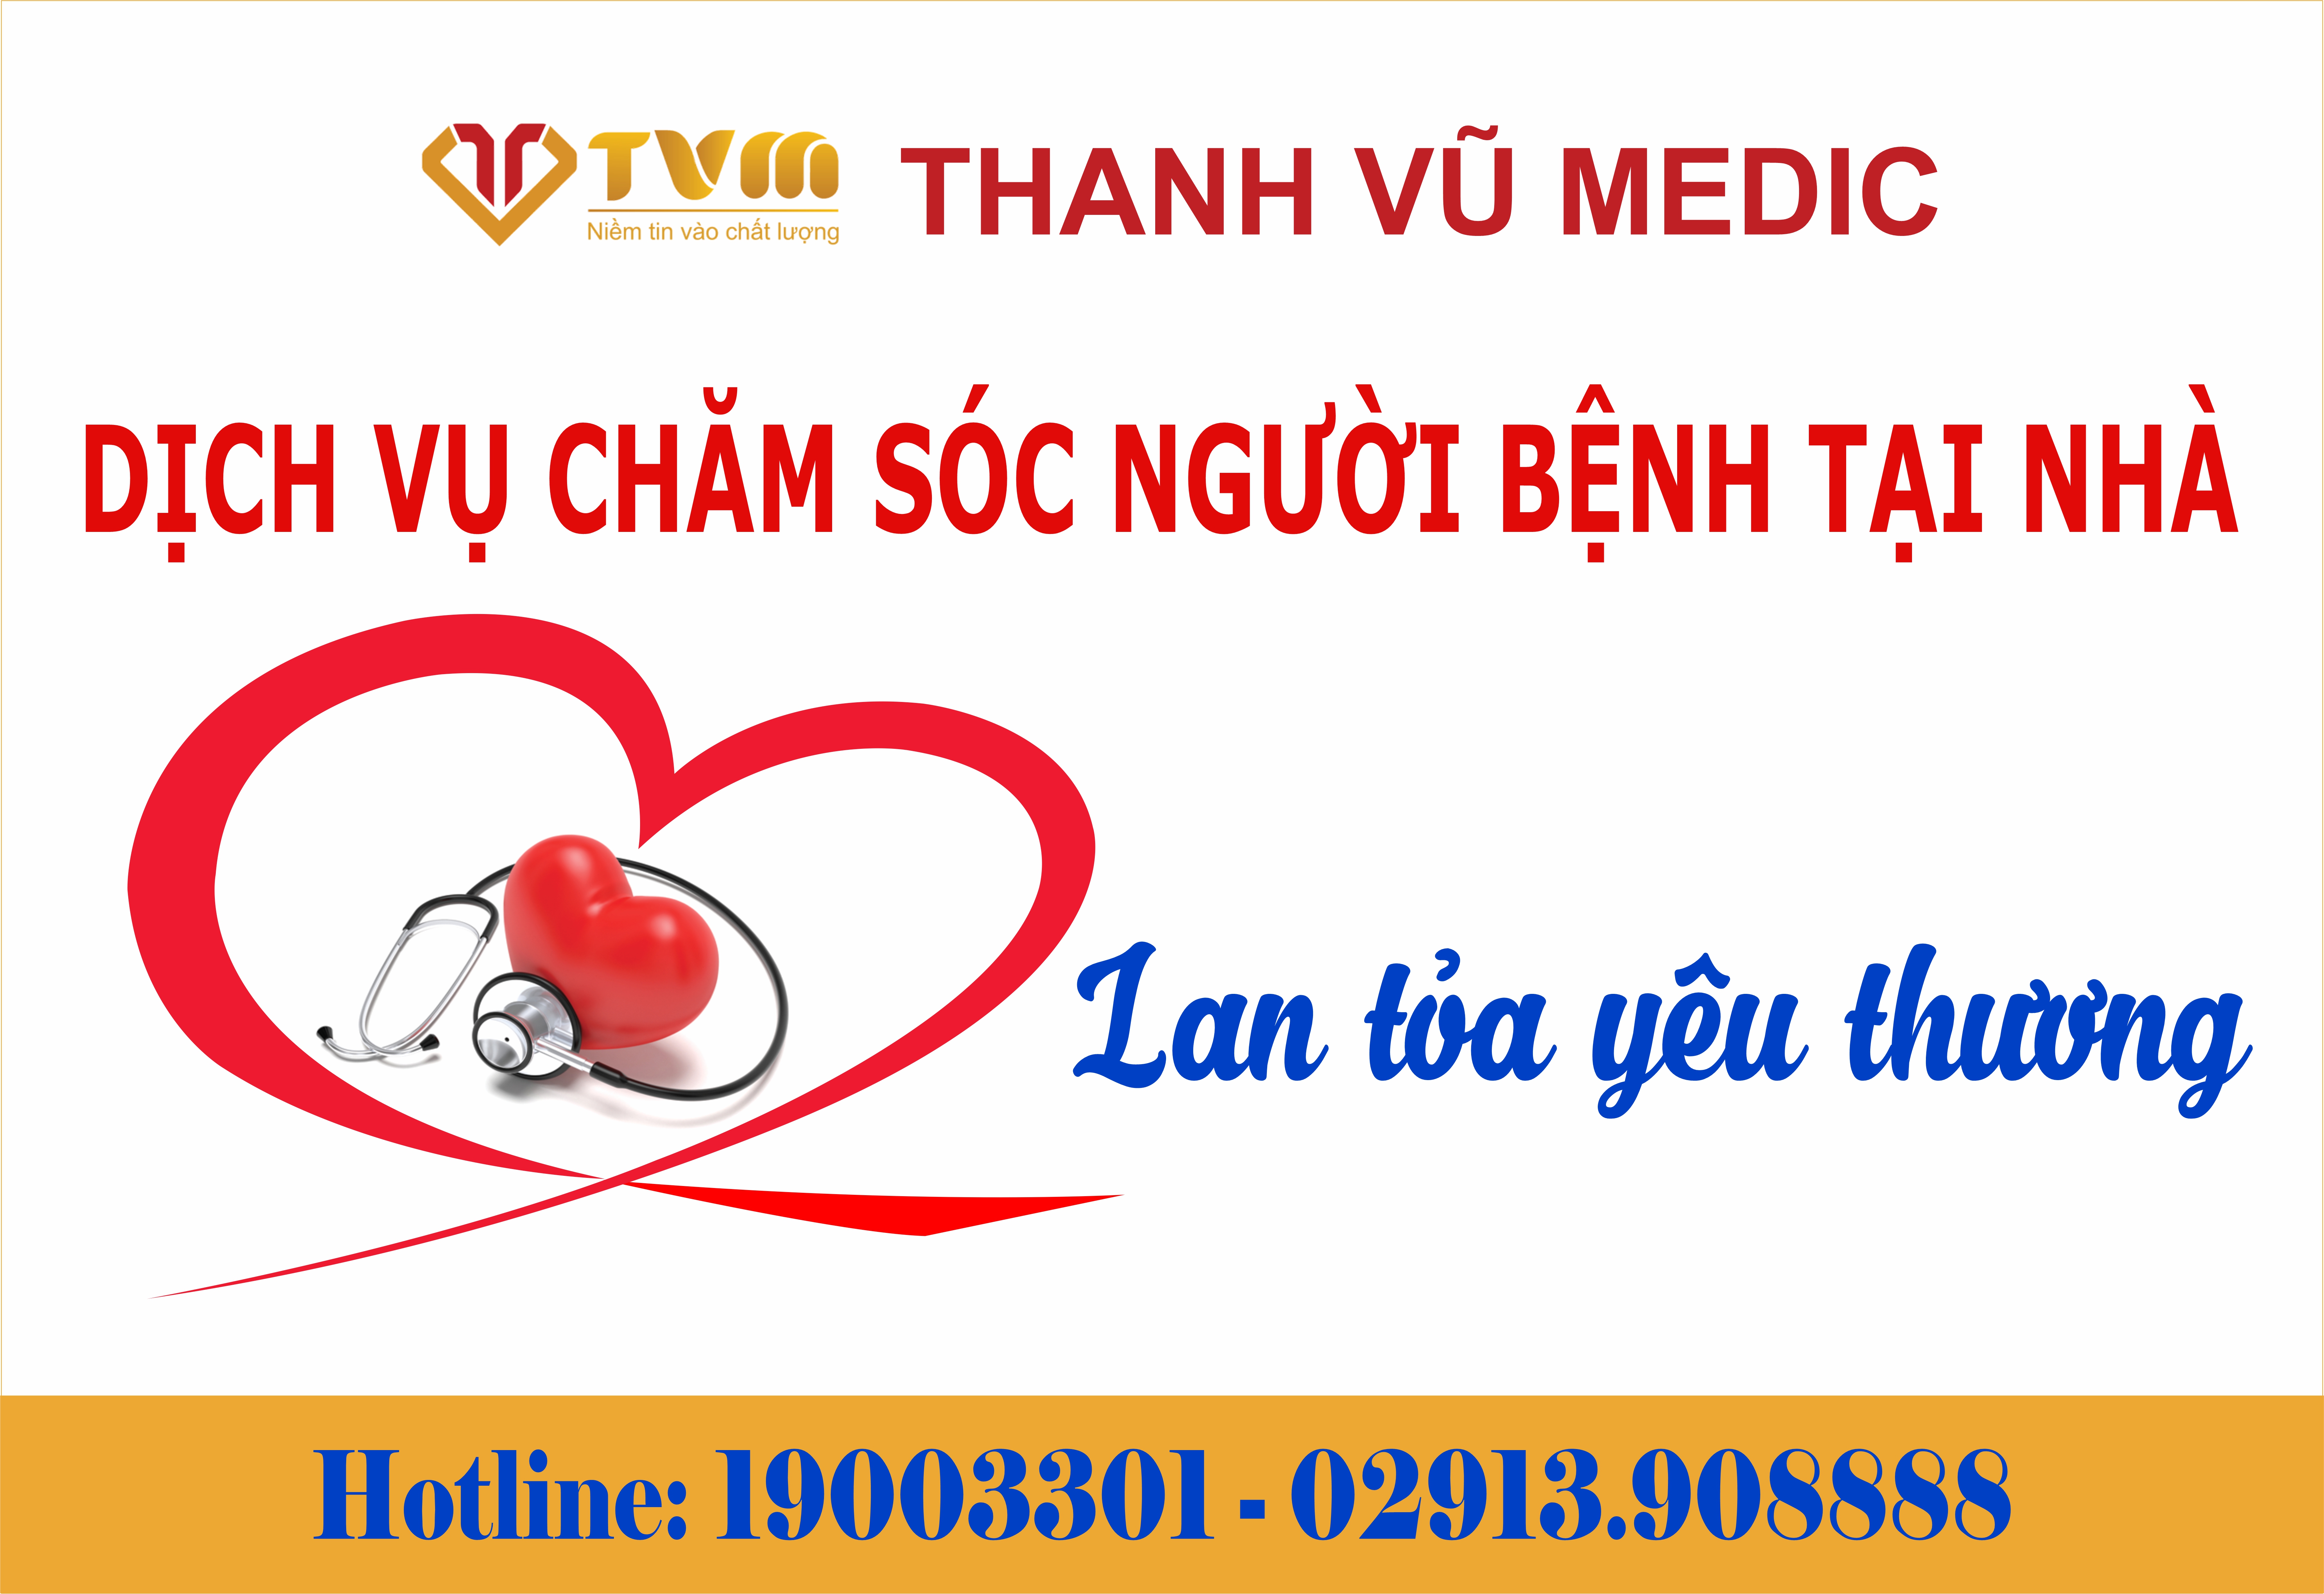 Bệnh viện Đa khoa Thanh Vũ Medic Bạc Liêu lan tỏa yêu thương qua hoạt động thăm khám, chăm sóc sức khỏe bệnh nhân tại nhà